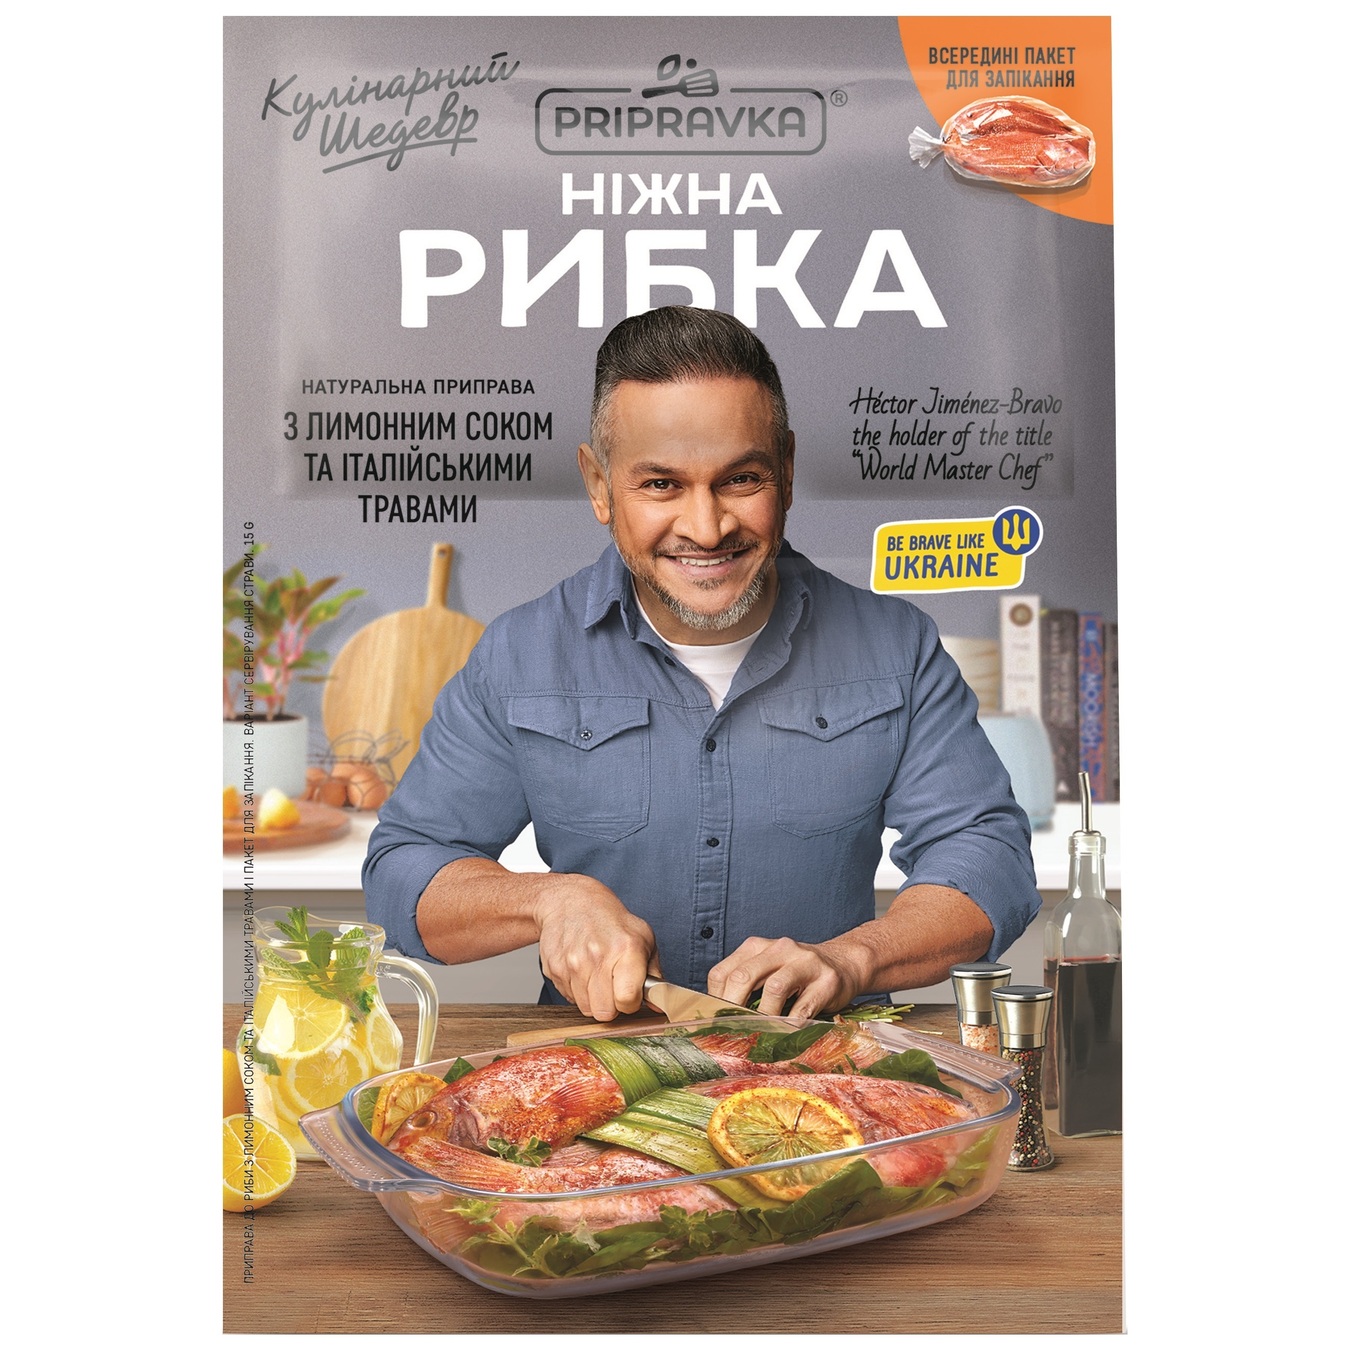 Приправа Pripravka Кулінарний шедевр для риби з лимонним соком і італійськими травами 15г